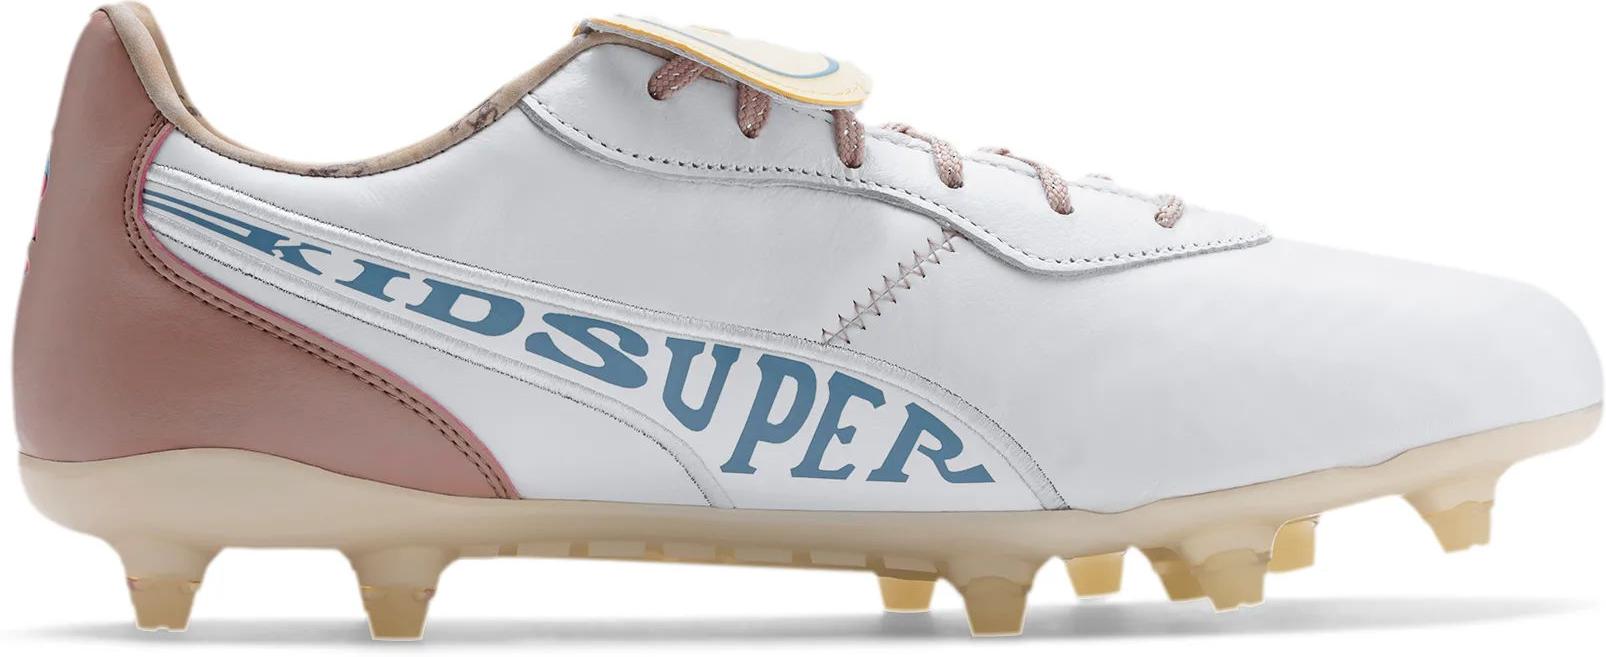 Puma X KIDSUPER Studios King FG Men's Soccer Shoes Hector